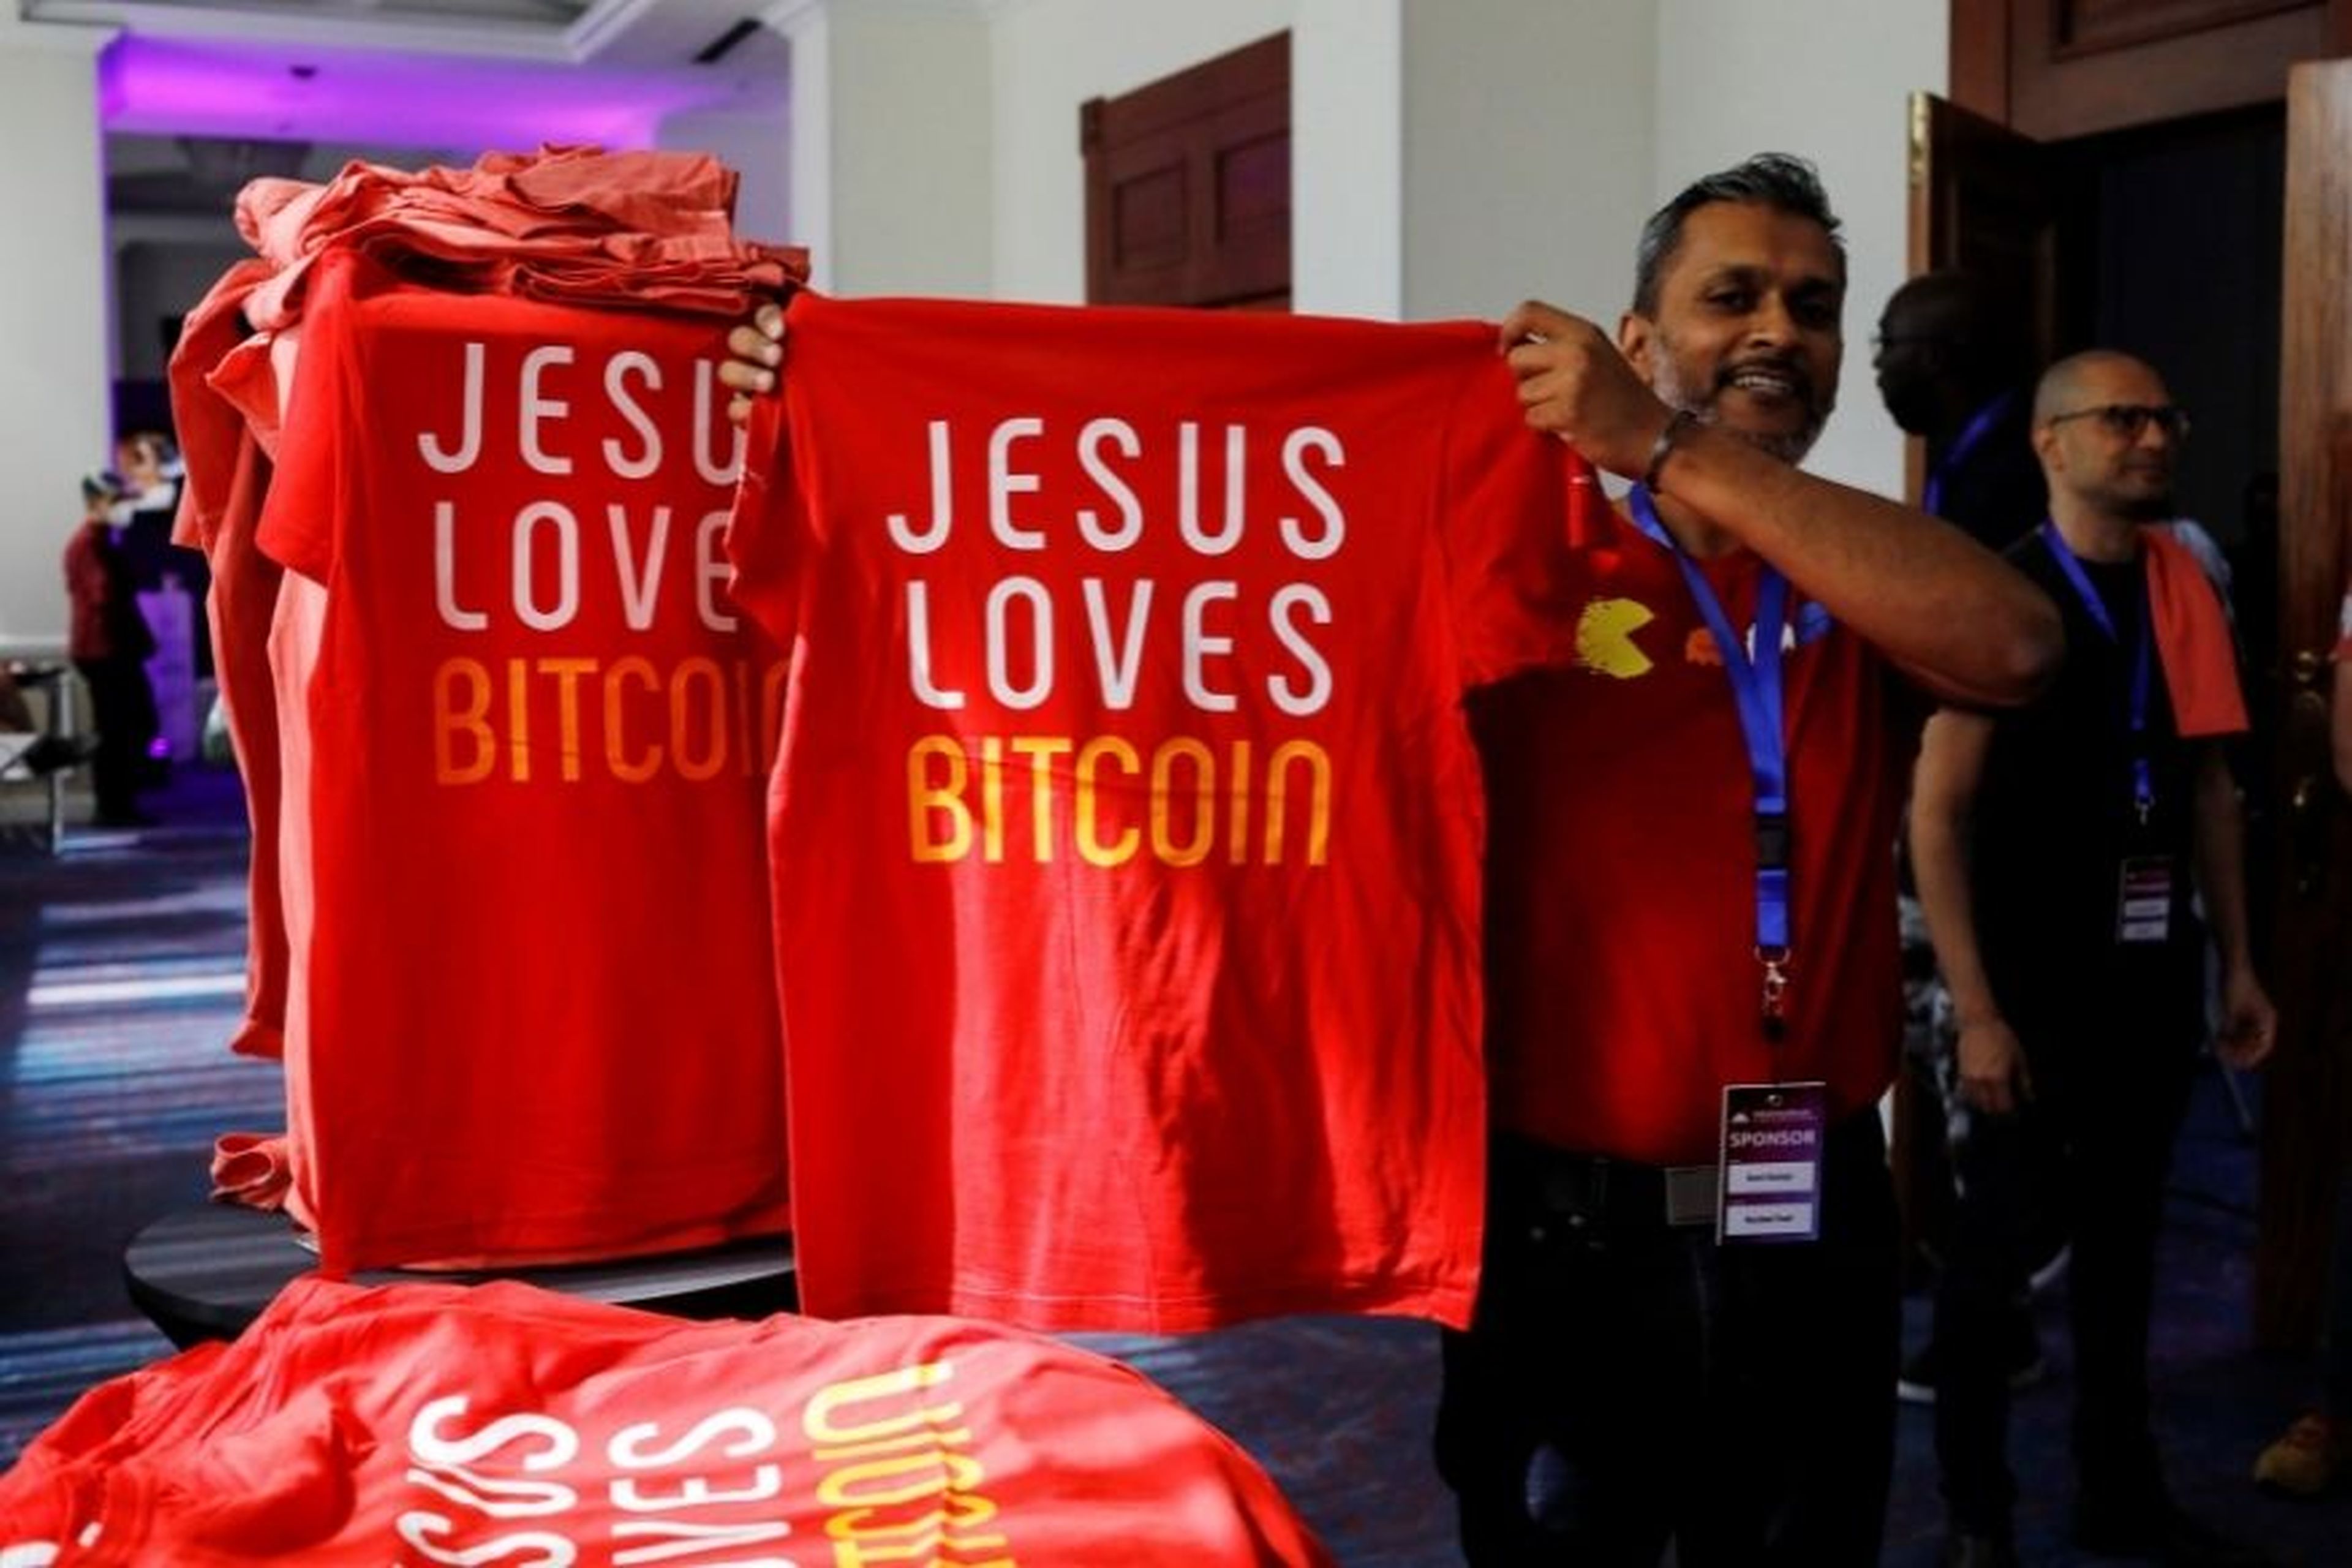 Un hombre muestra unas camisetas en las que se lee: “Jesús ama bitcoin”.